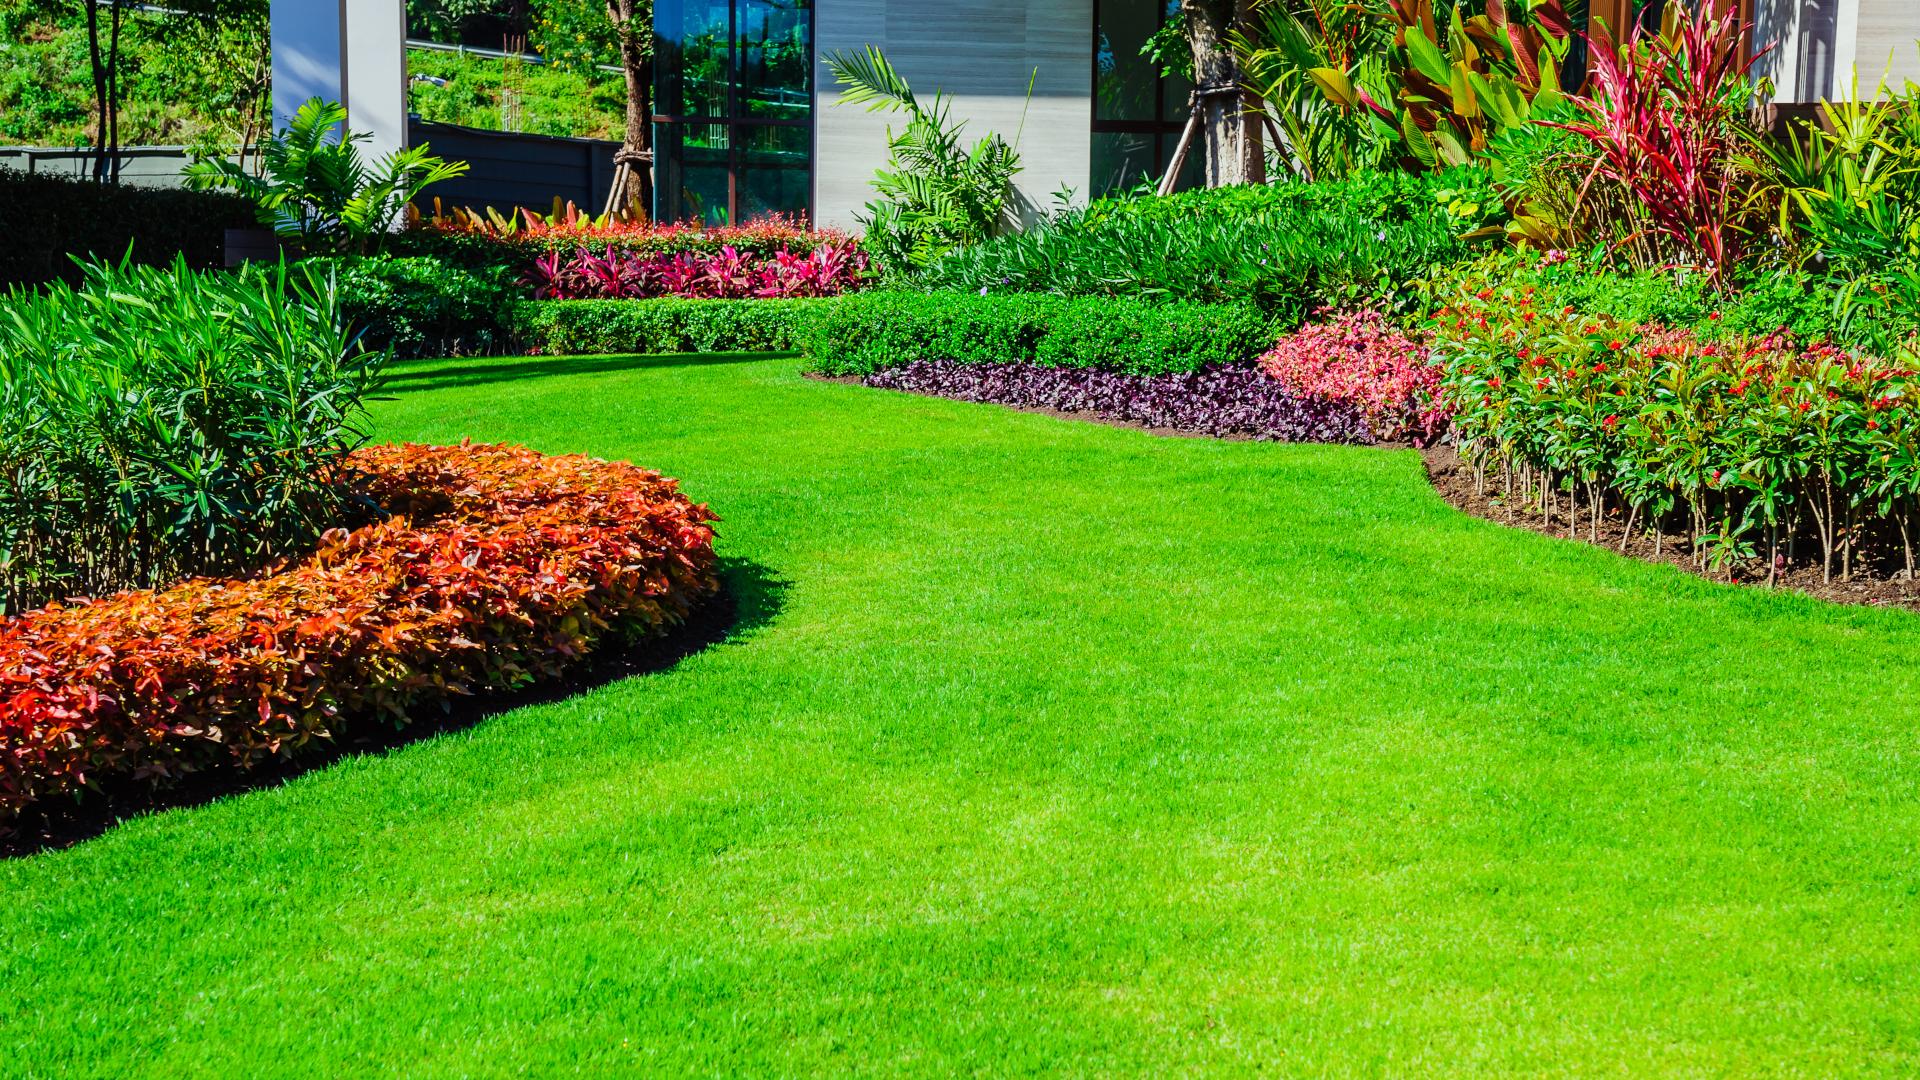 Hyvin hoidettu nurmikko kiittää vaivannäöstä. Kuva: Shutterstock